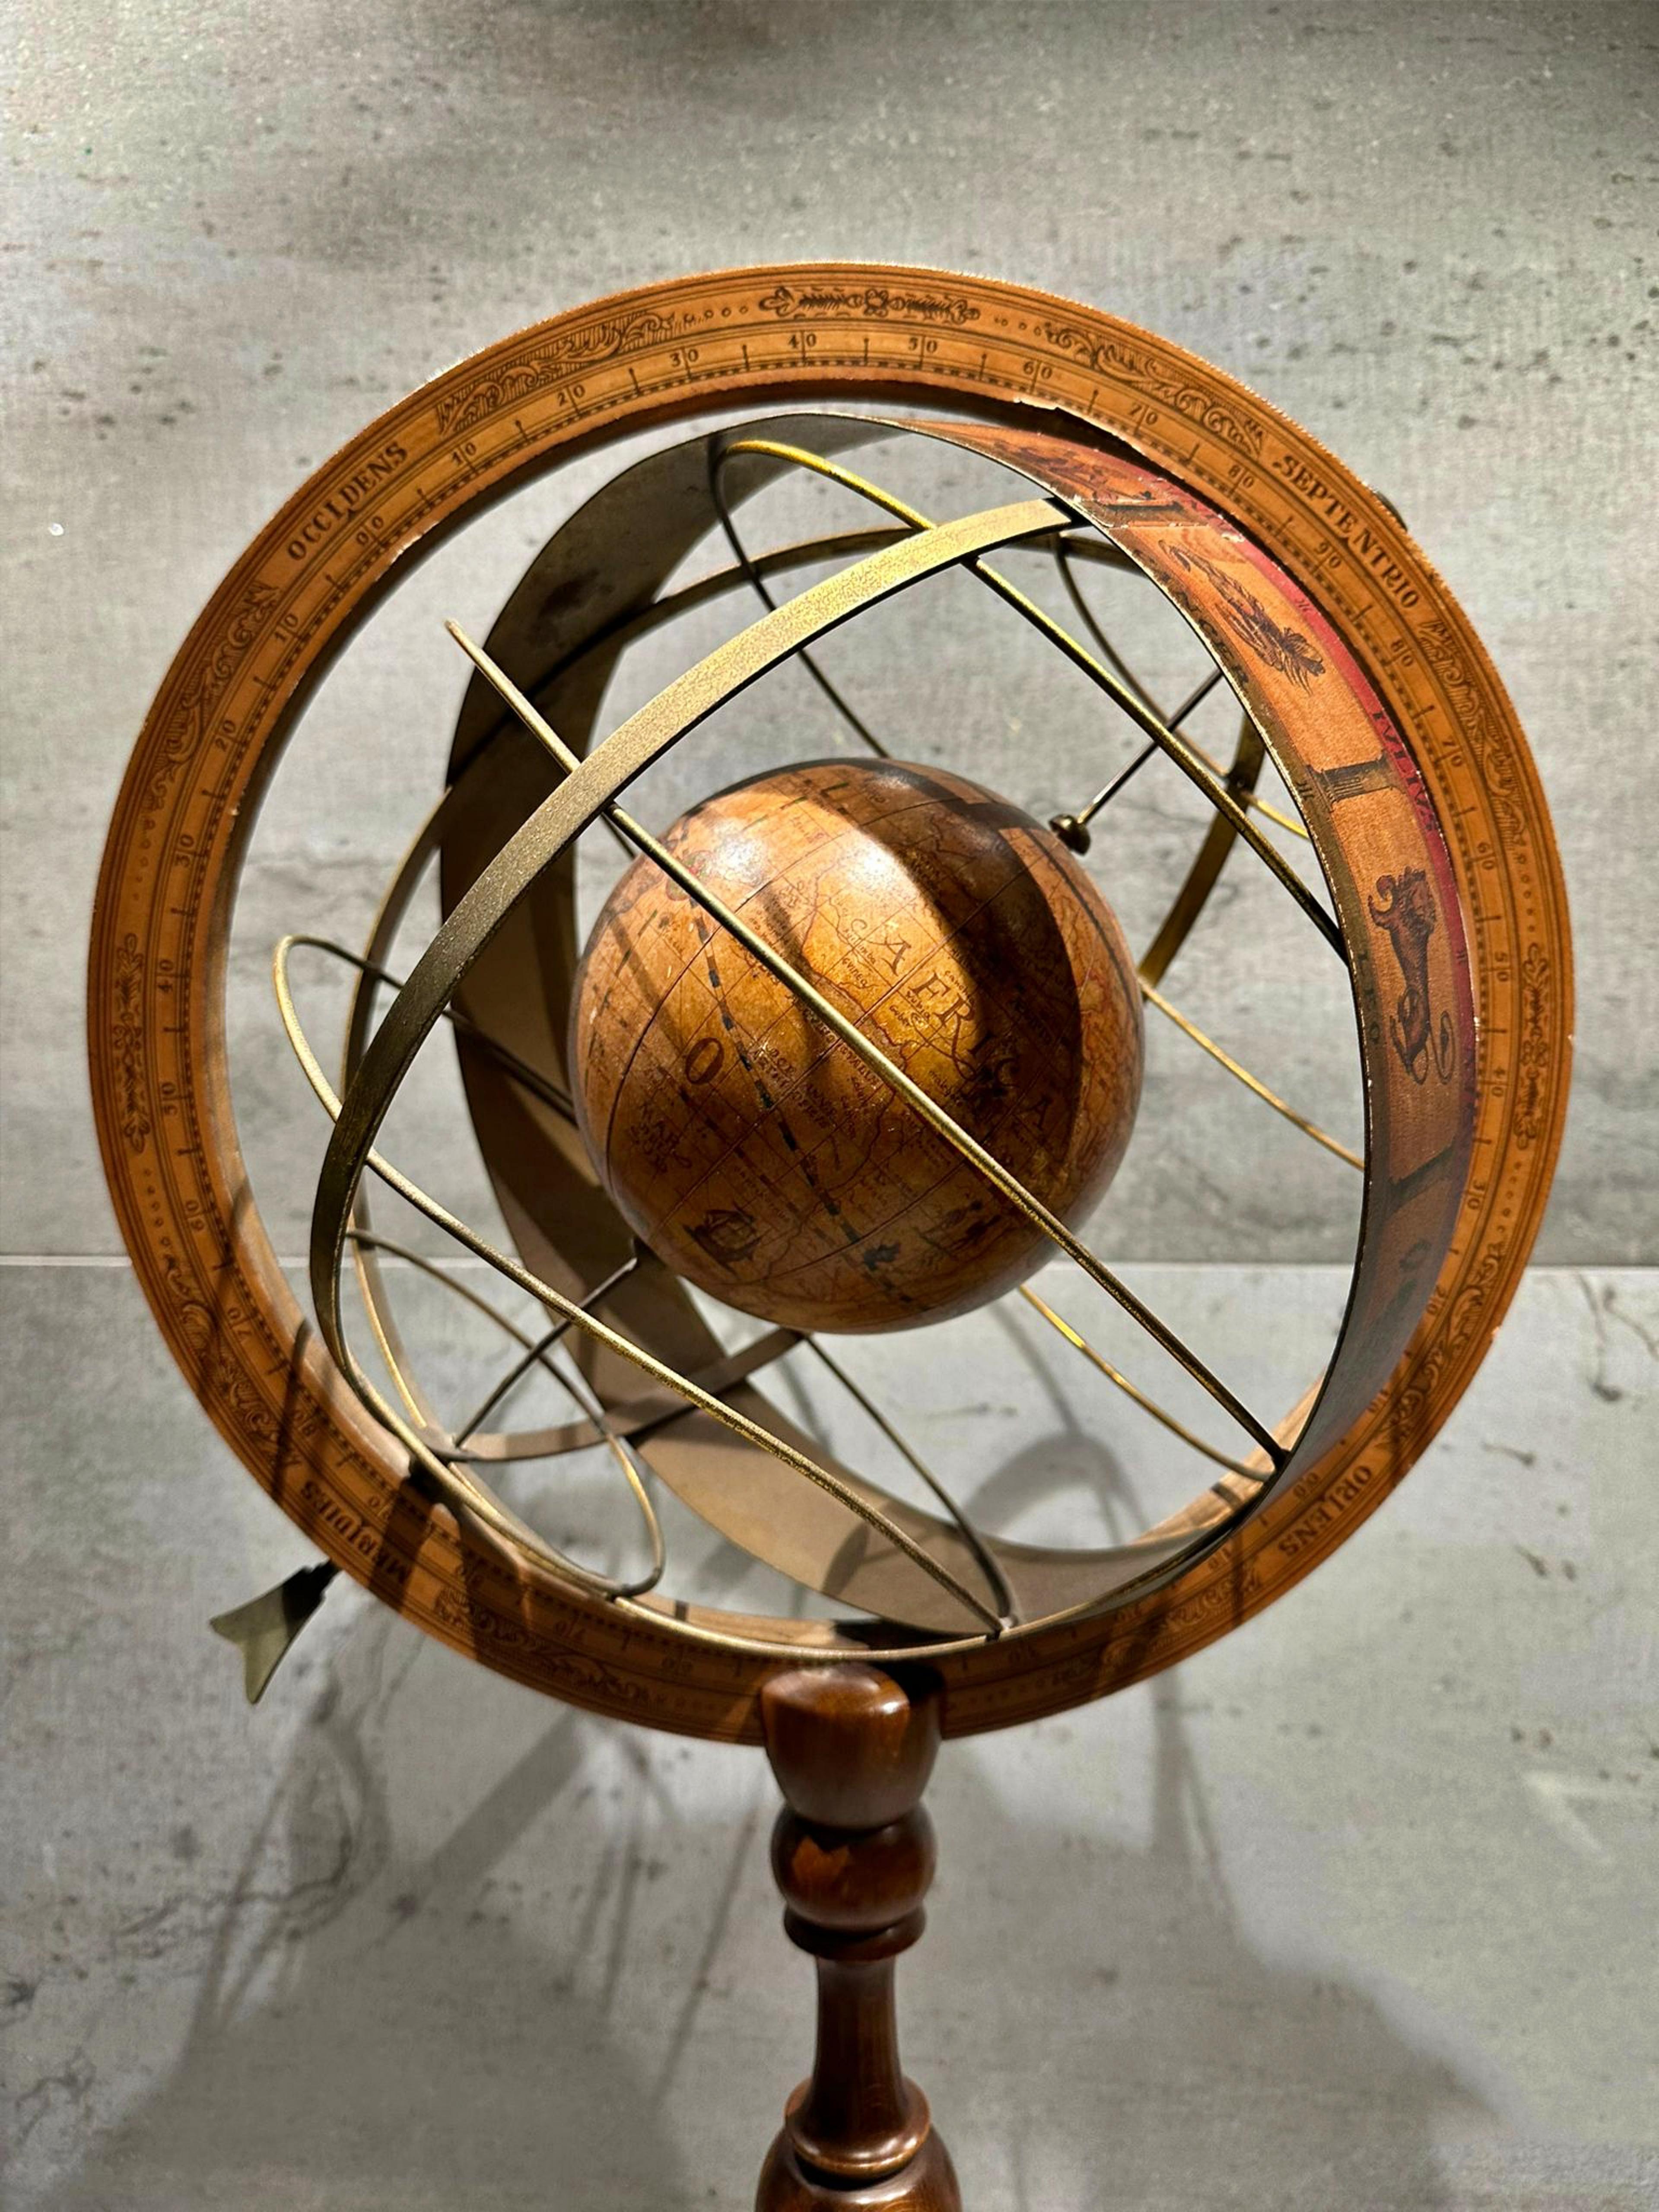 Important et exclusif globe terrestre espagnol 20e siècle
du Zodiac en métal sur une base solide en bois dur. Un objet de collection unique et hautement décoratif pour toutes les pièces de la maison. 
Dimensions : 58 cm de haut et 42 cm de